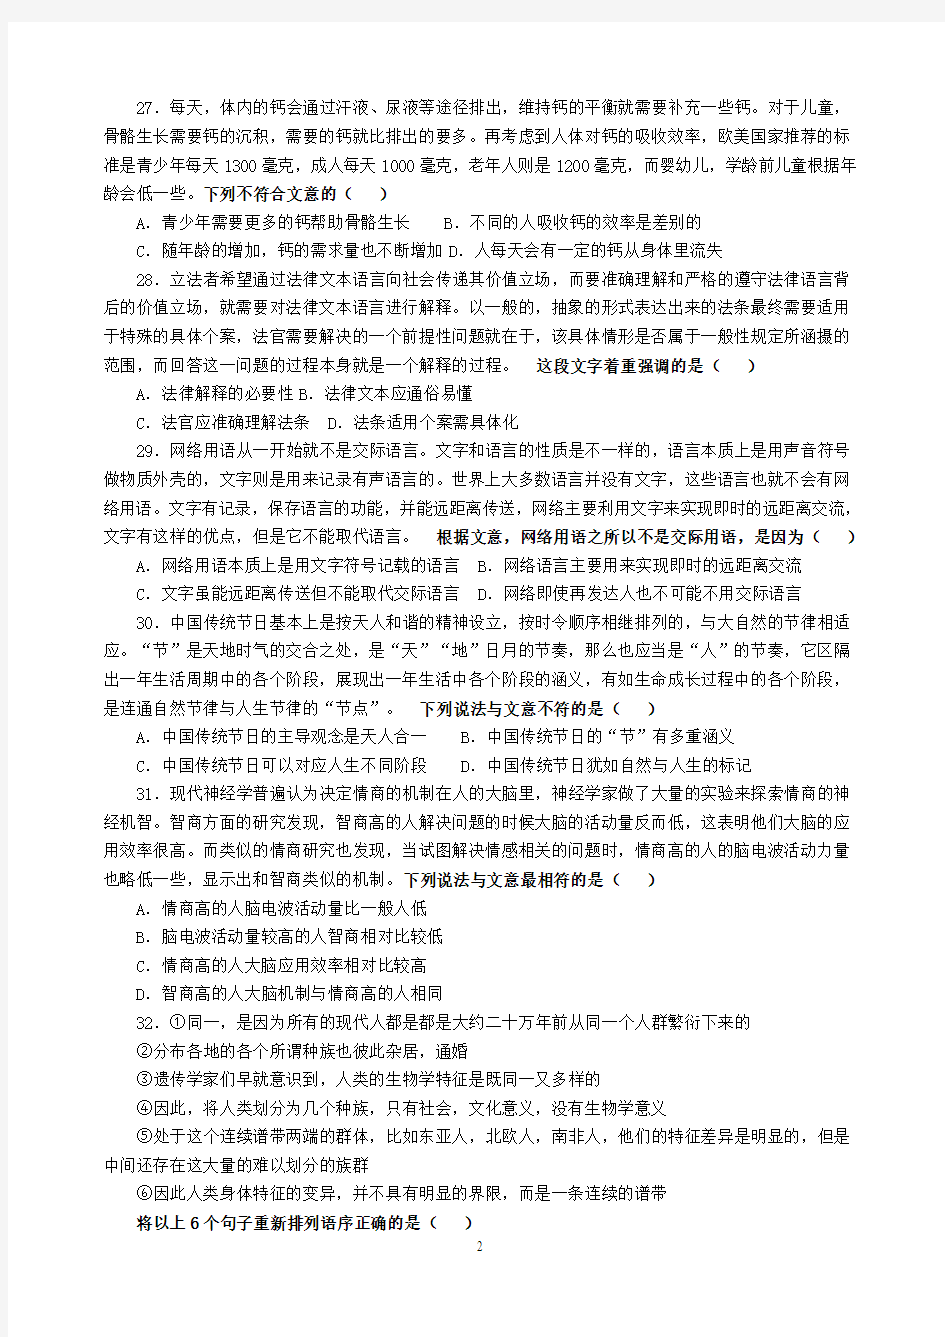 16江苏、北京.12黑(2017.3.24晚)启航——言语讲义印刷 版 ) (1)